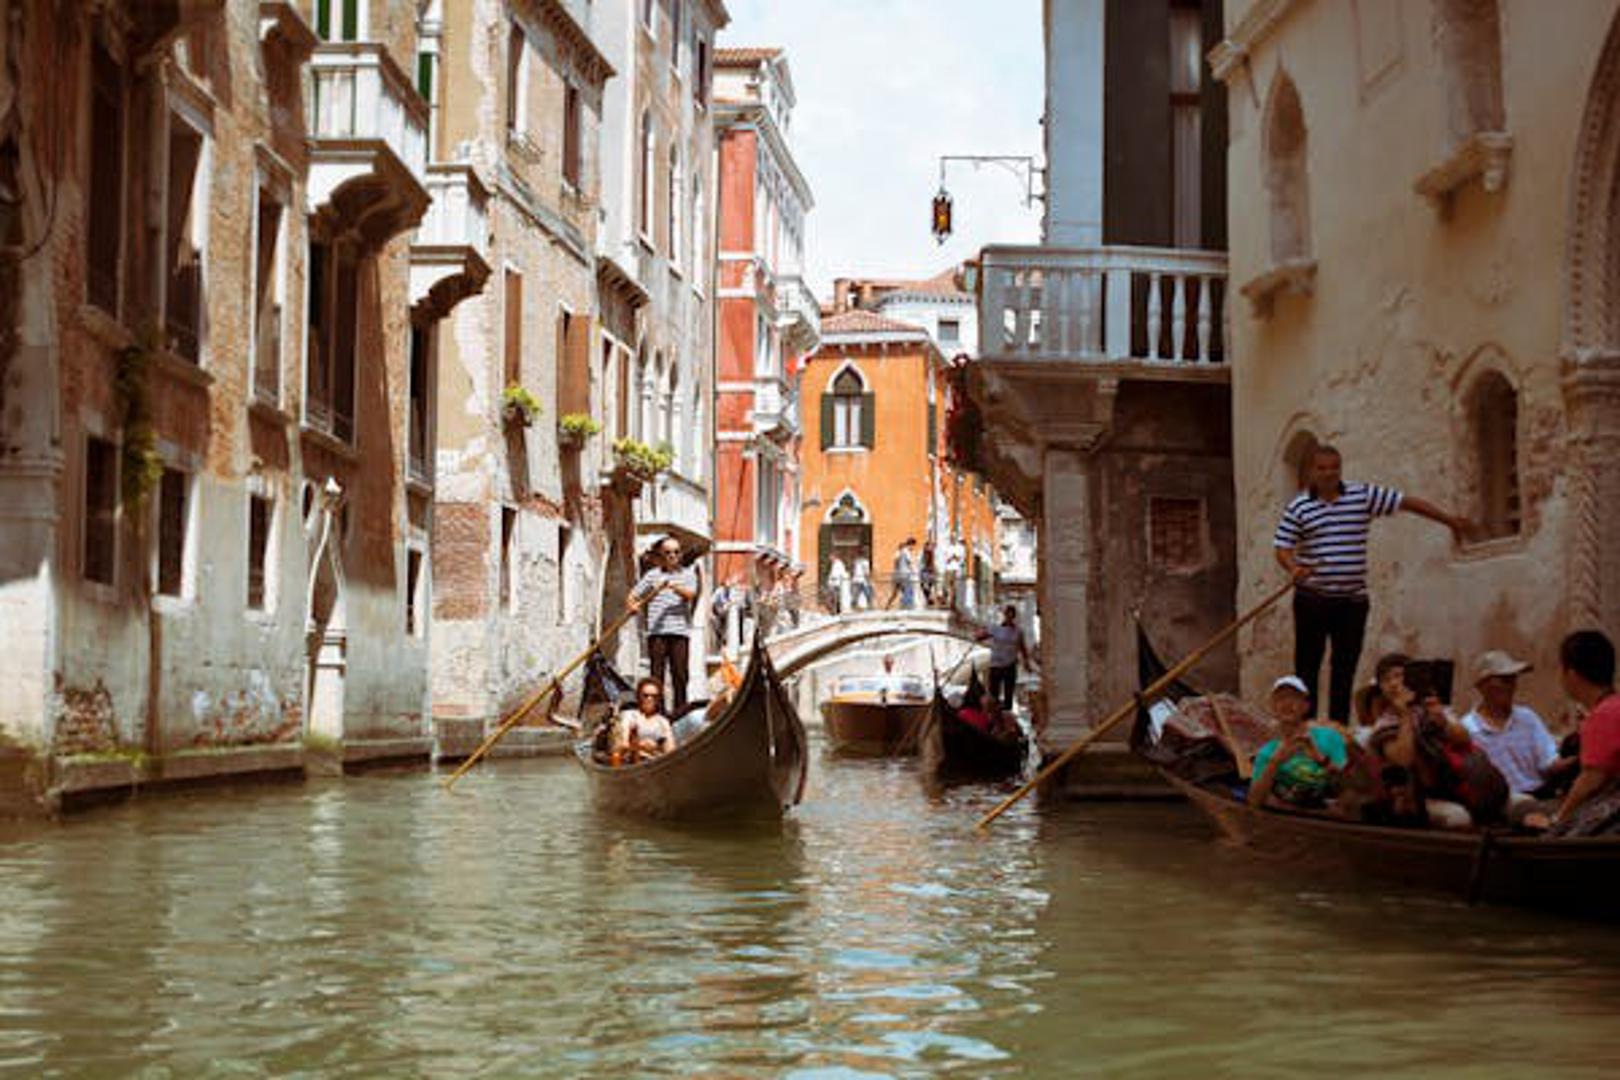 Novouvedena pristojba za turiste na jednodnevnom izletu u Veneciju gradu je donijela 975. 000 eura prihoda u prvih 11 dana pokusnog razdoblja.